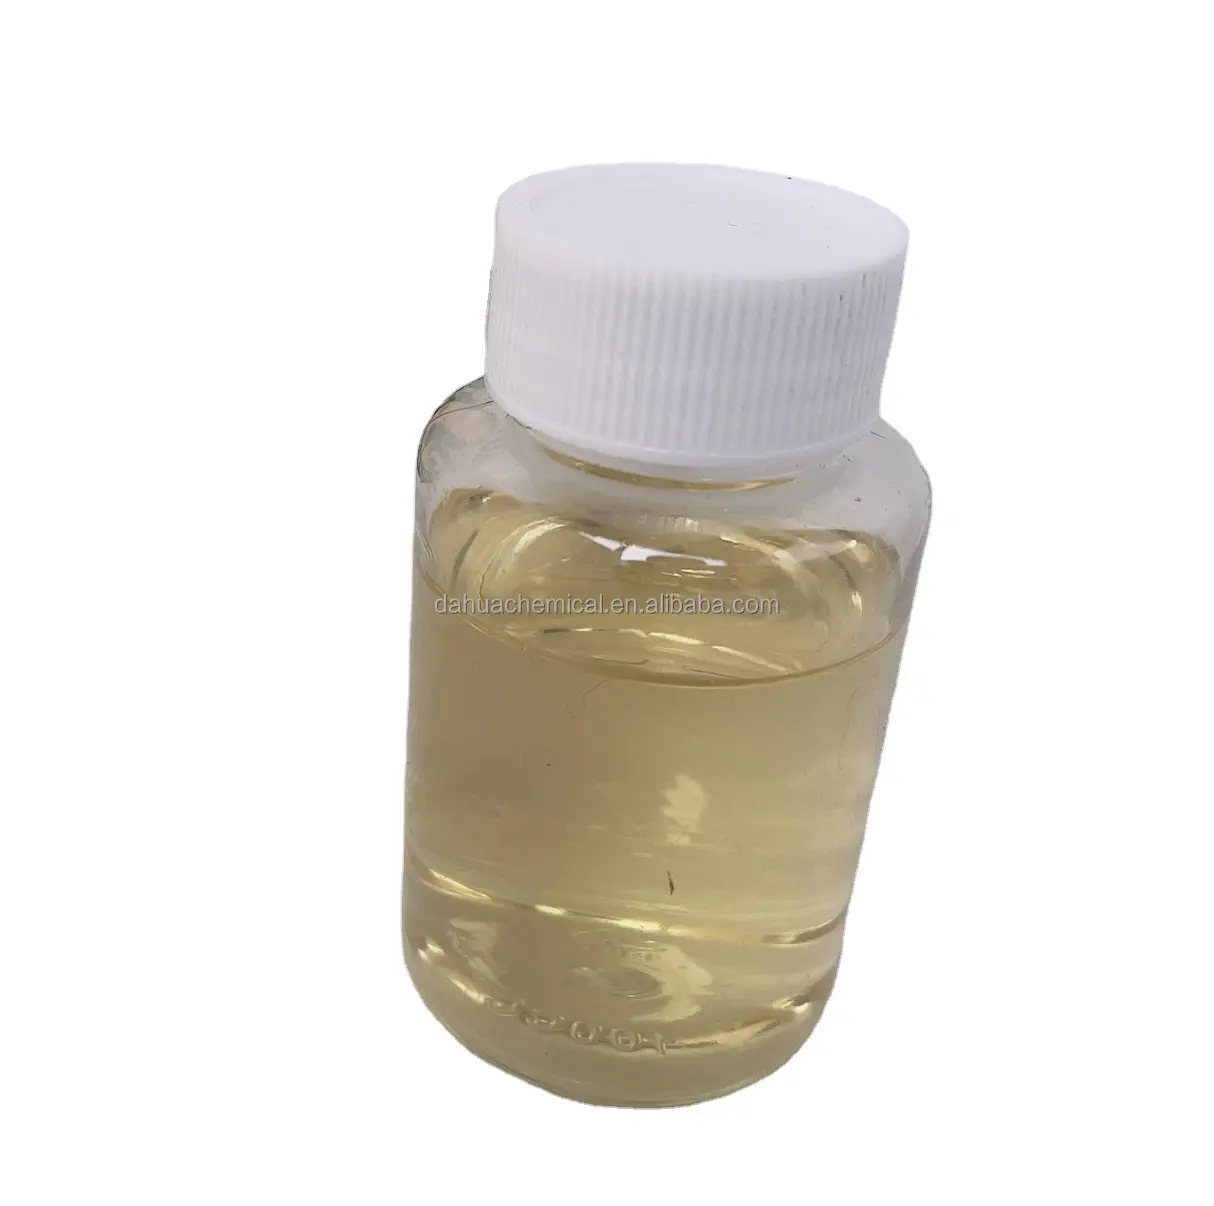 Agente di olio antistatico liquido catione per poliestere nylon poliestere e altre fiber sintetiche per eliminare statica attraverso l'emulsione